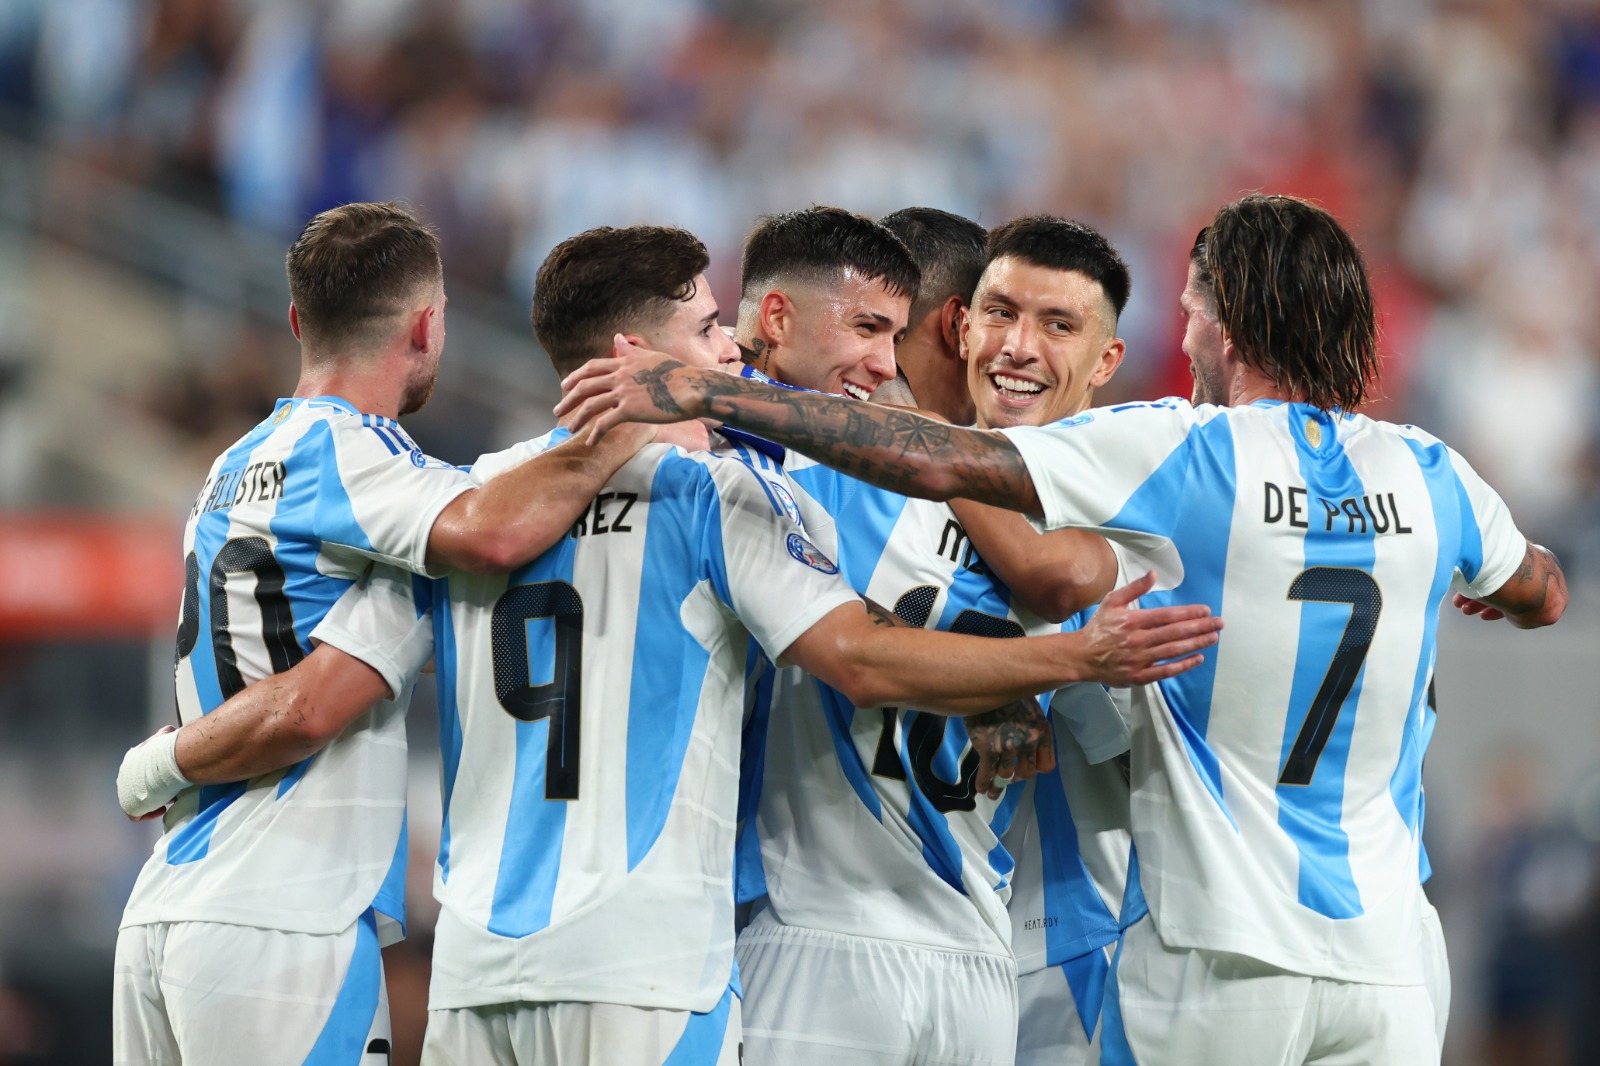 Argentina comemorando. (Foto: Sarah Stier/Getty Images)